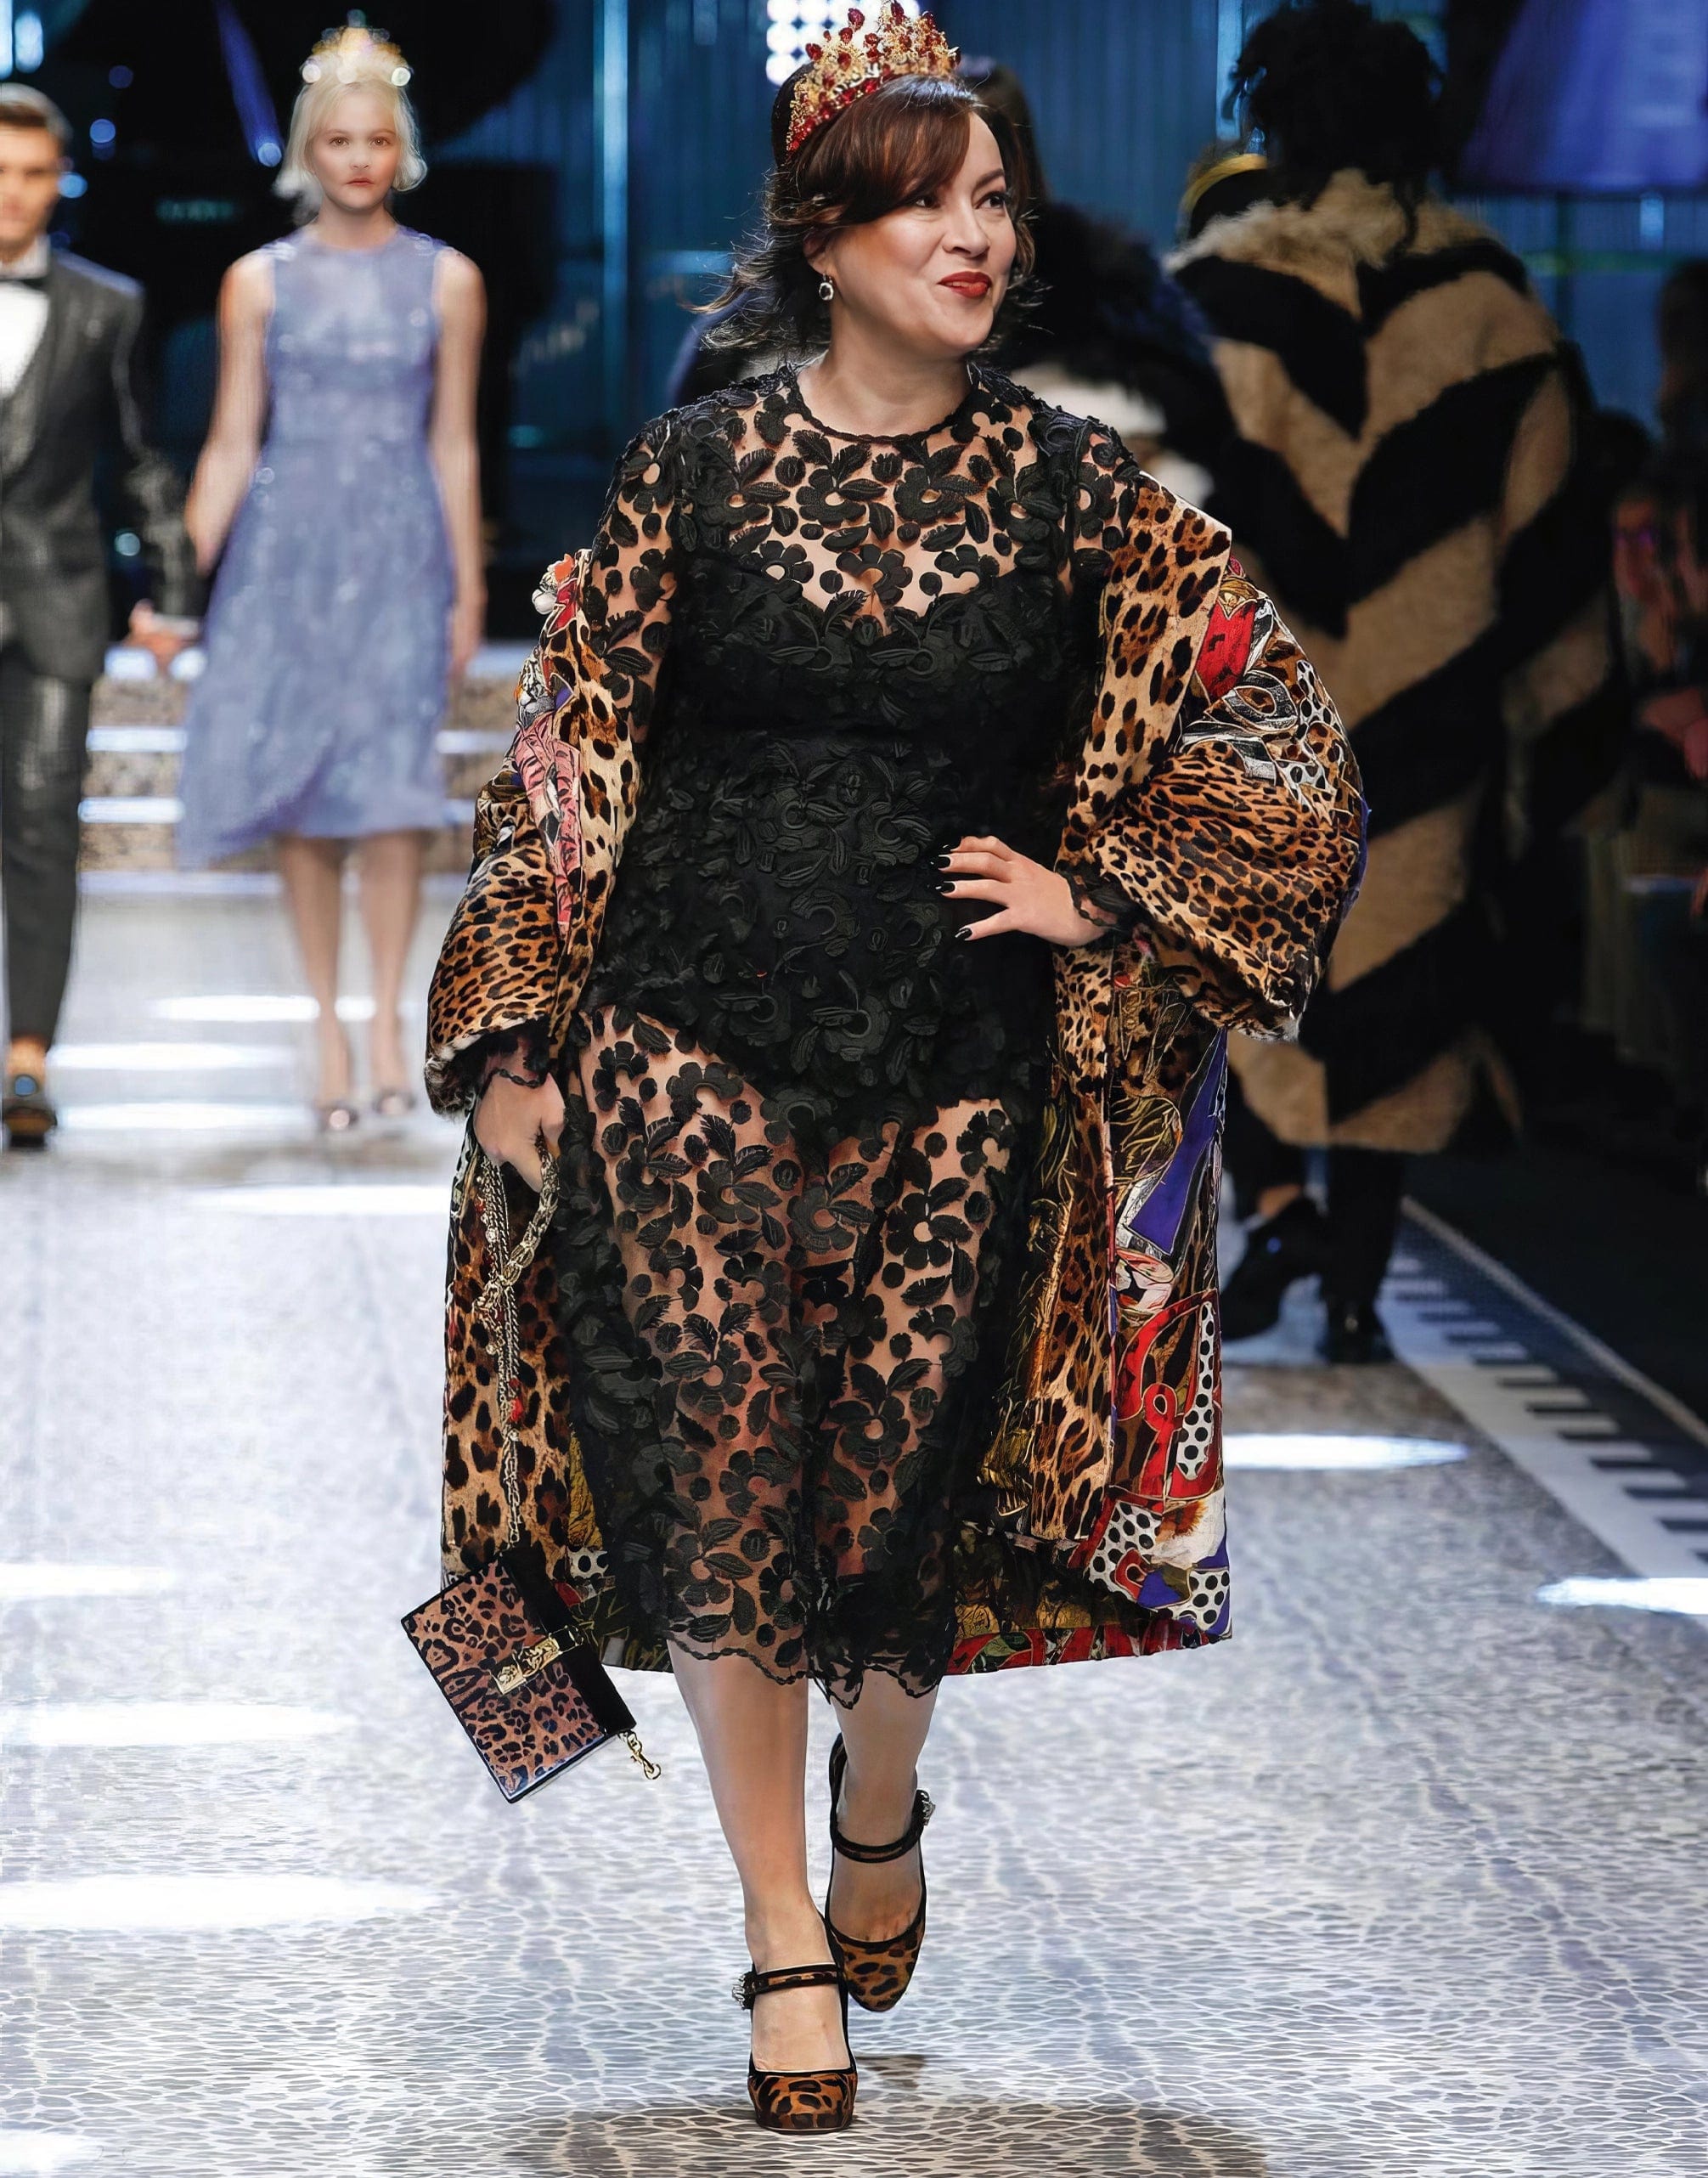 Dolce & Gabbana Leopard Print Pony Mary Jane Pumps